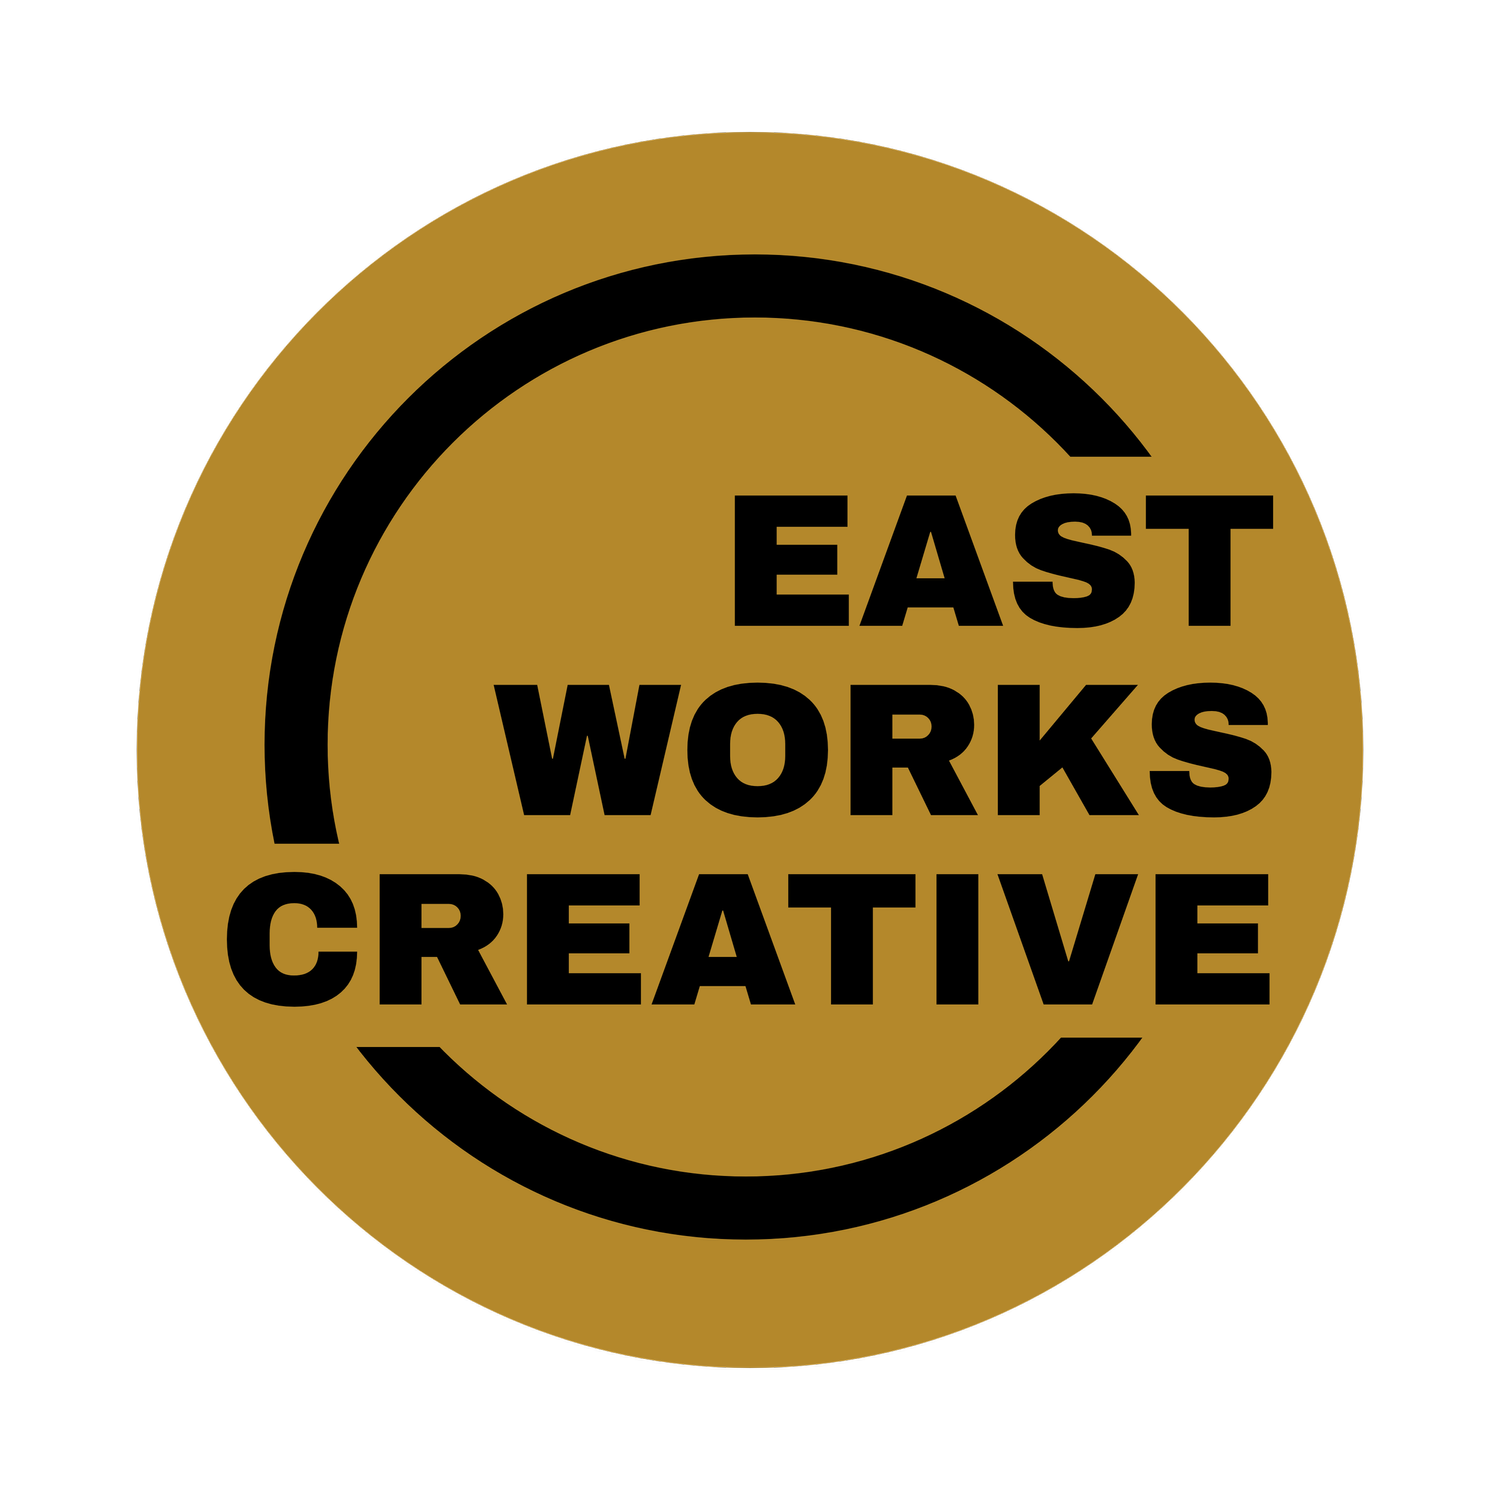 EAST WORKS CREATIVE